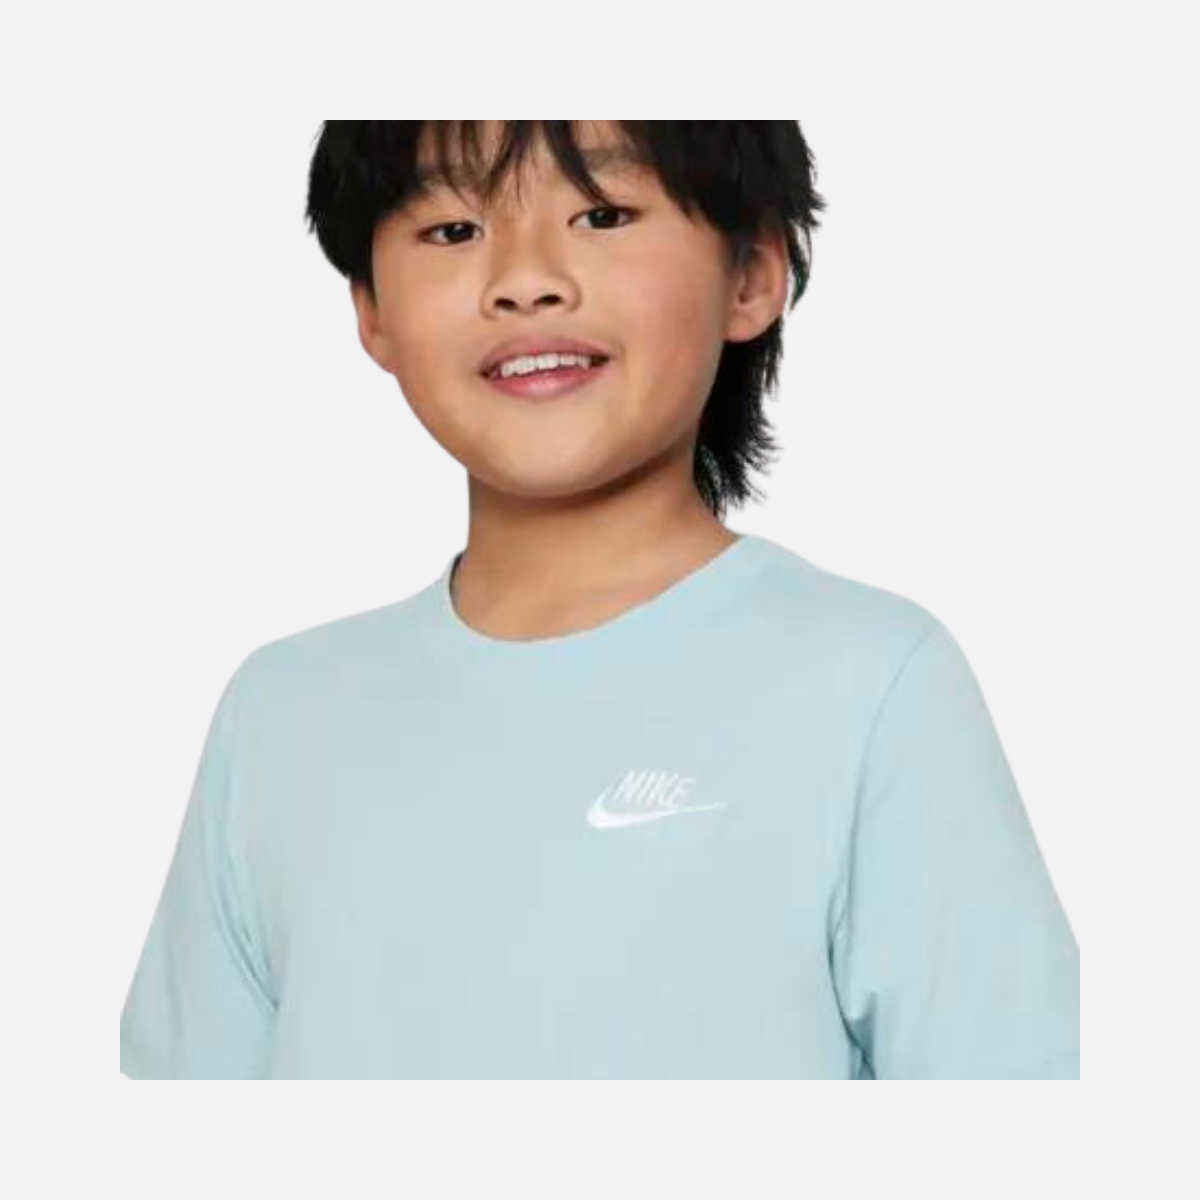 Nike Sportswear Older Kids' T-Shirt -Ocean Bliss